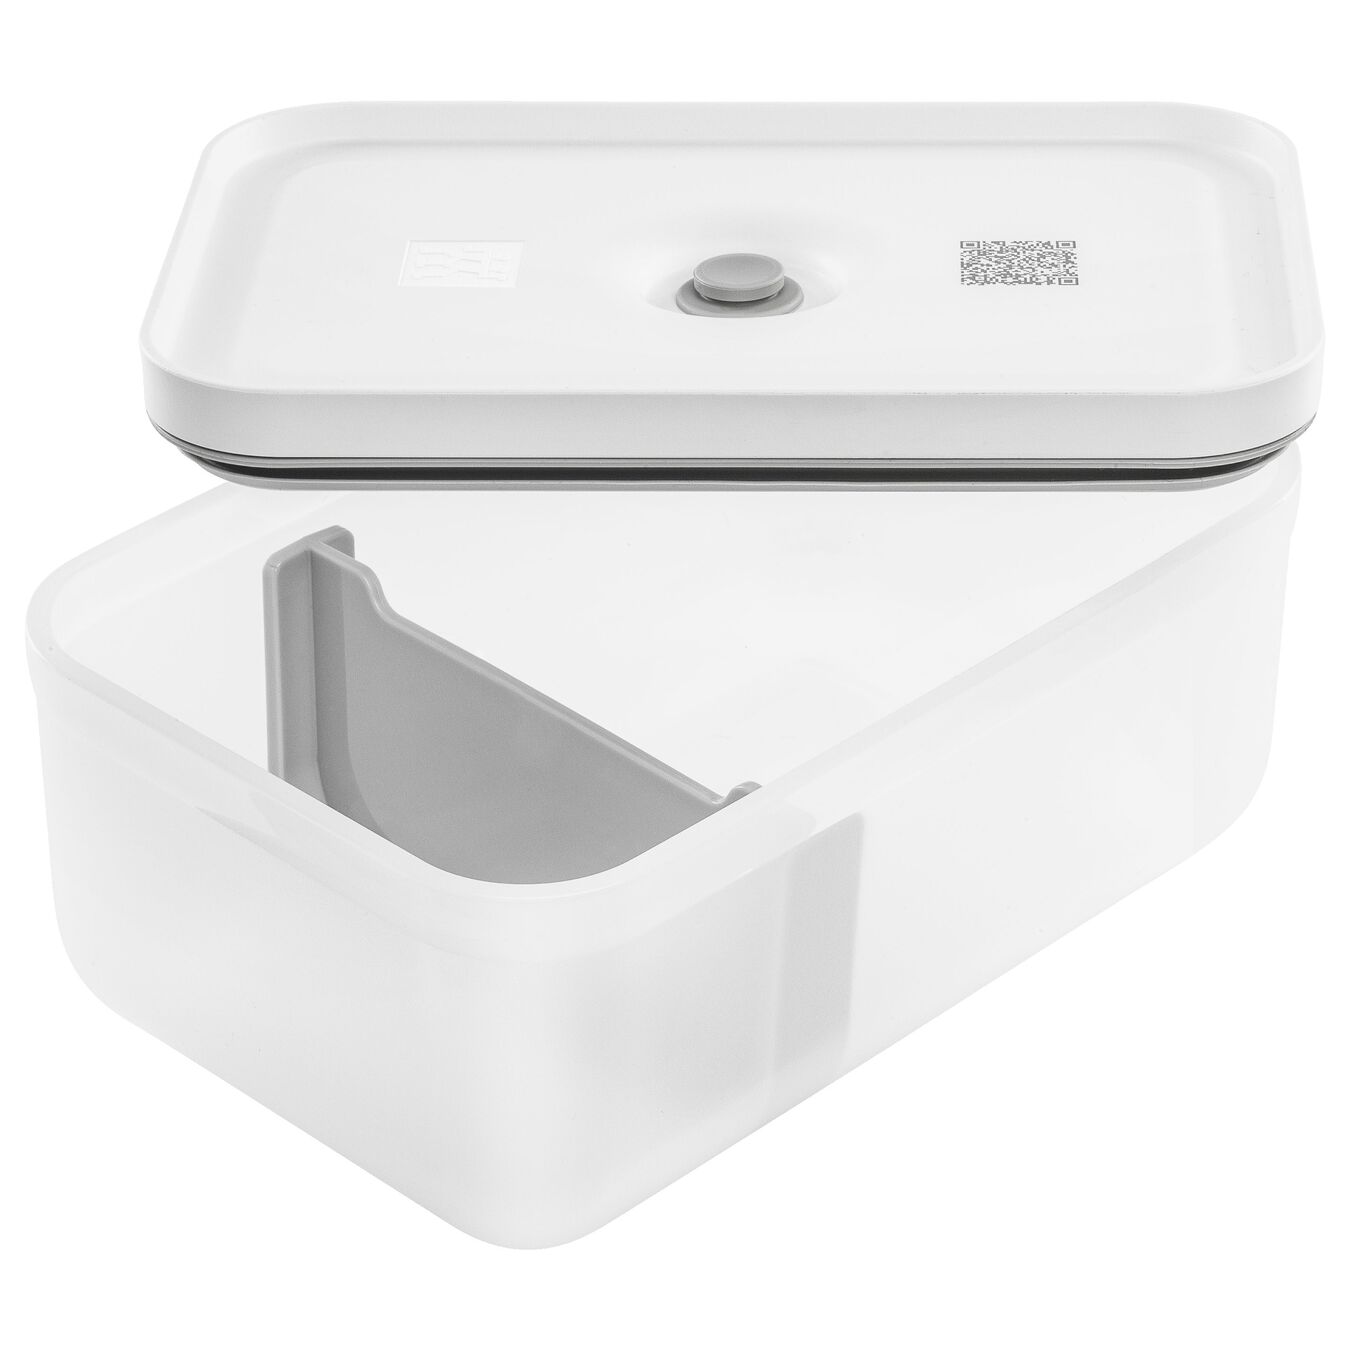 Lunch box sottovuoto L, plastica, semi transparente-grigio,,large 5